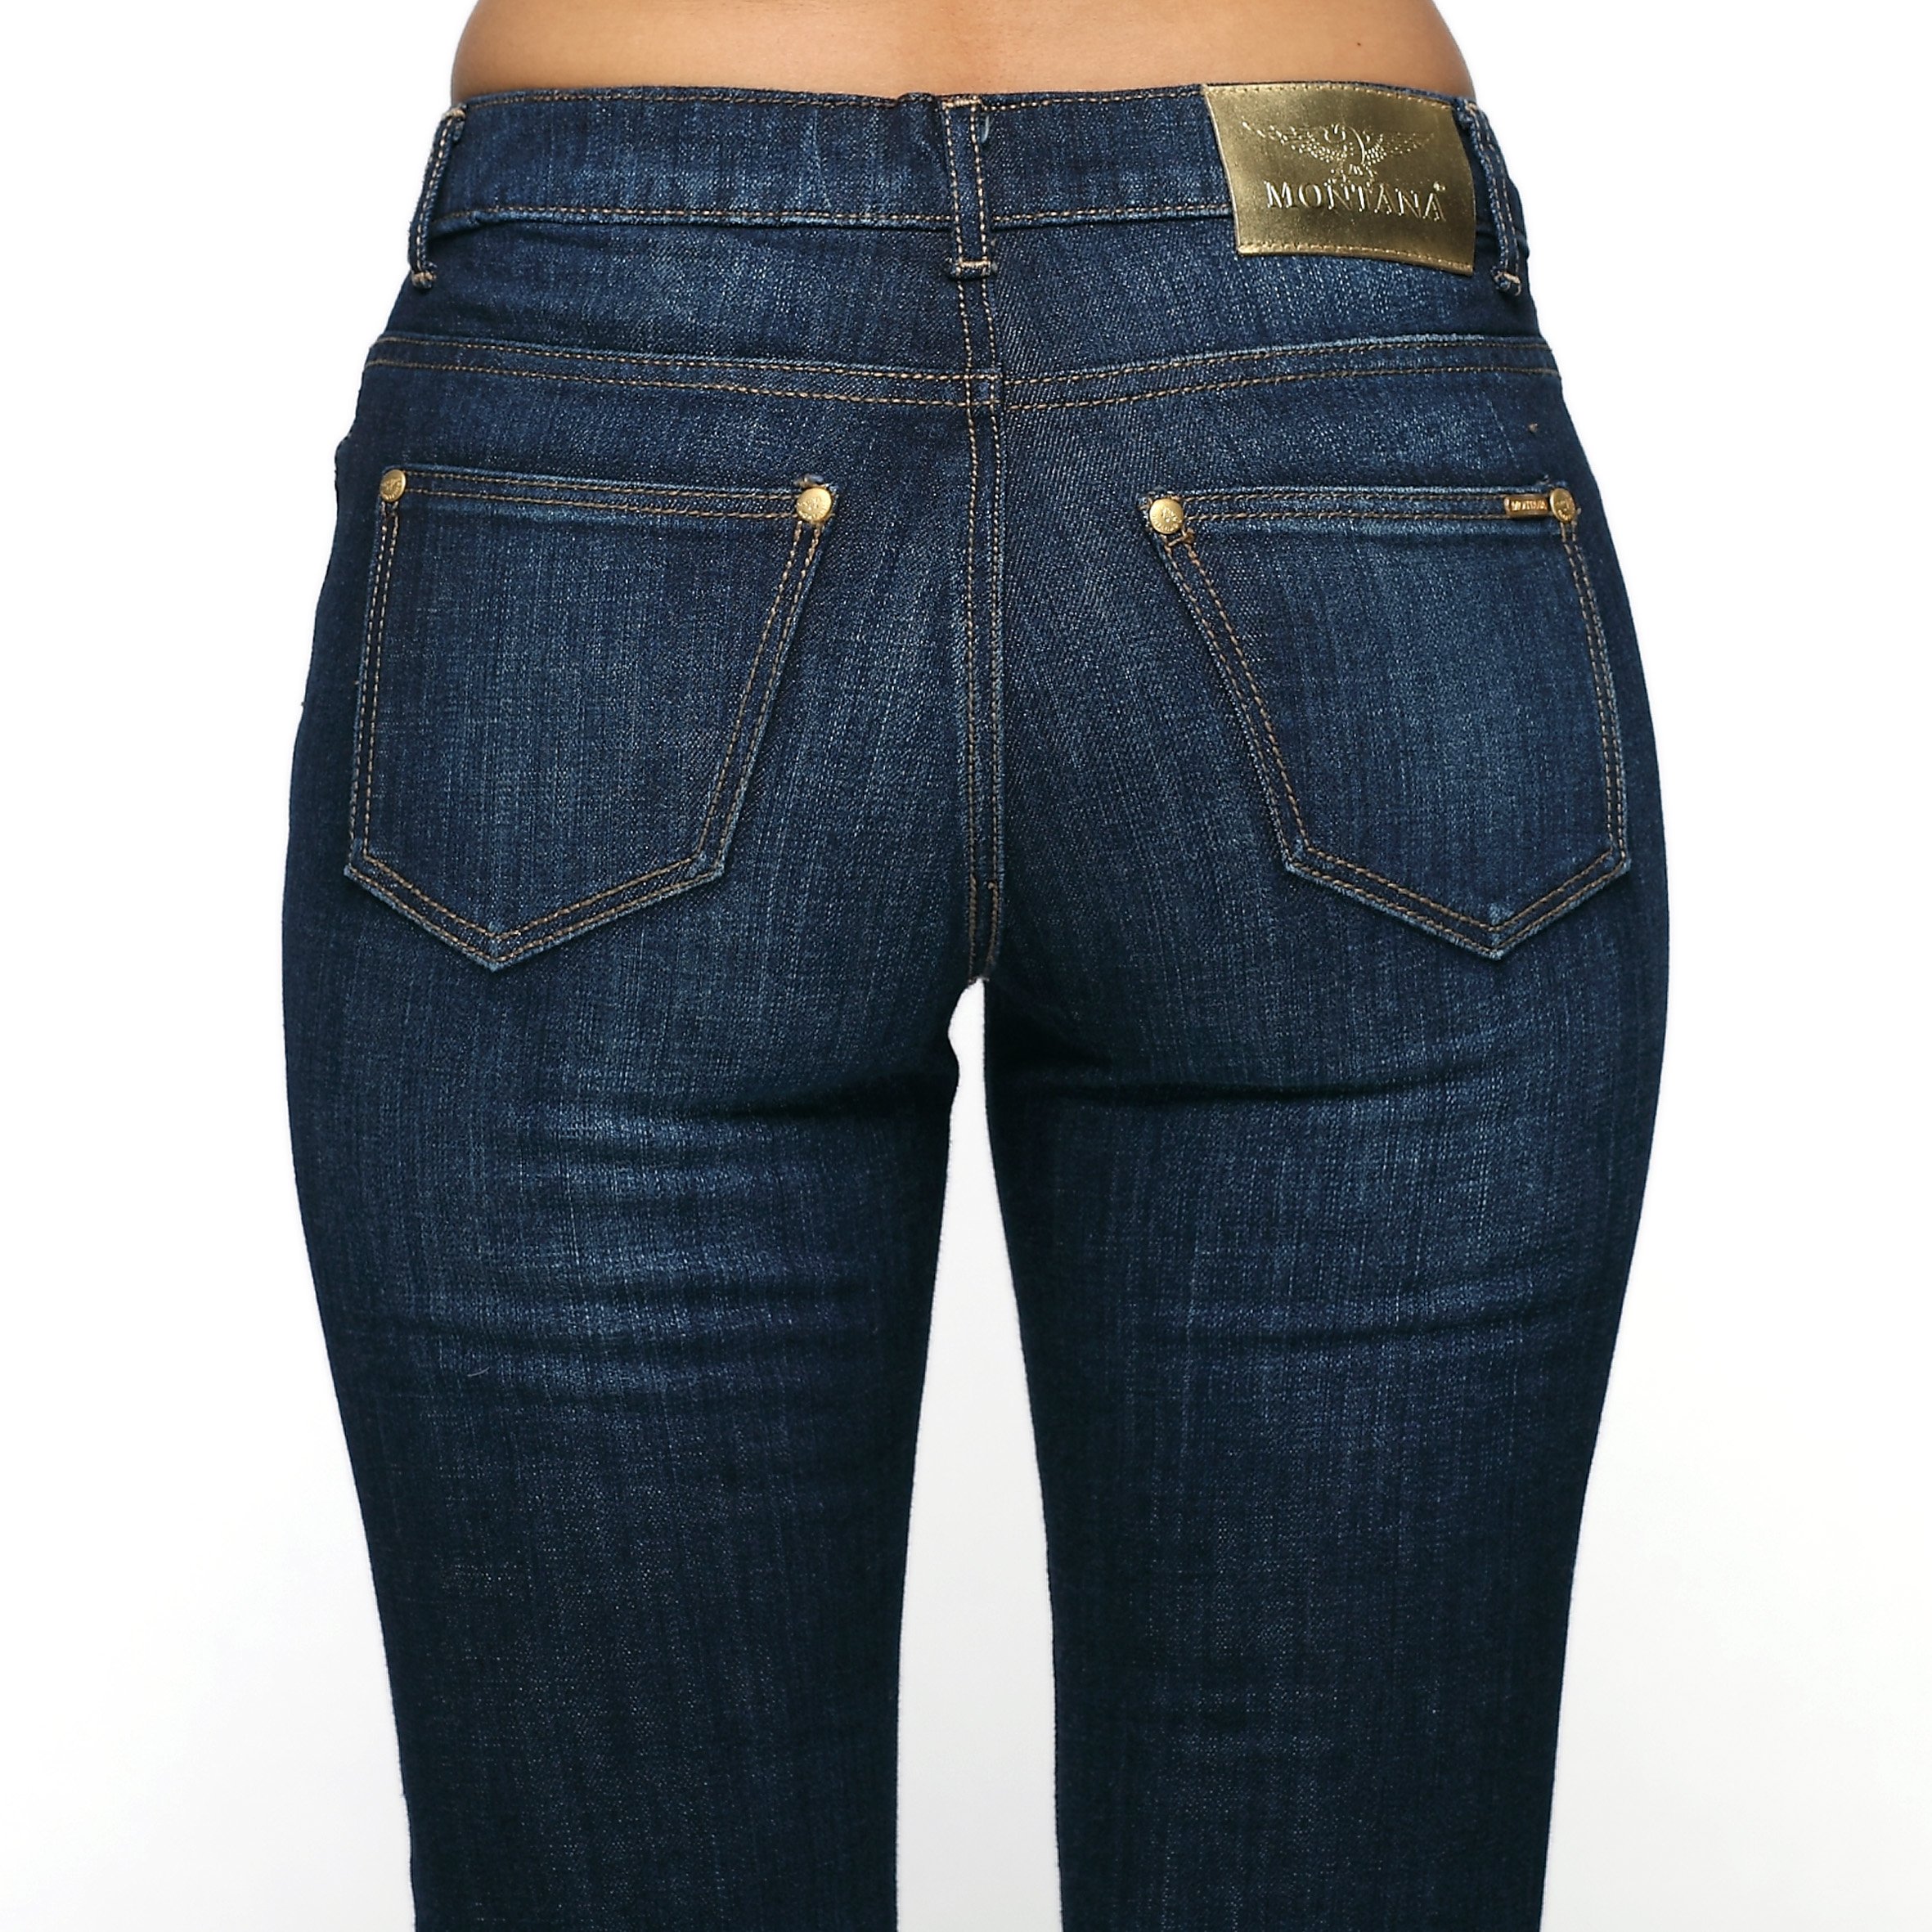 Купить джинсы в москве недорого женские